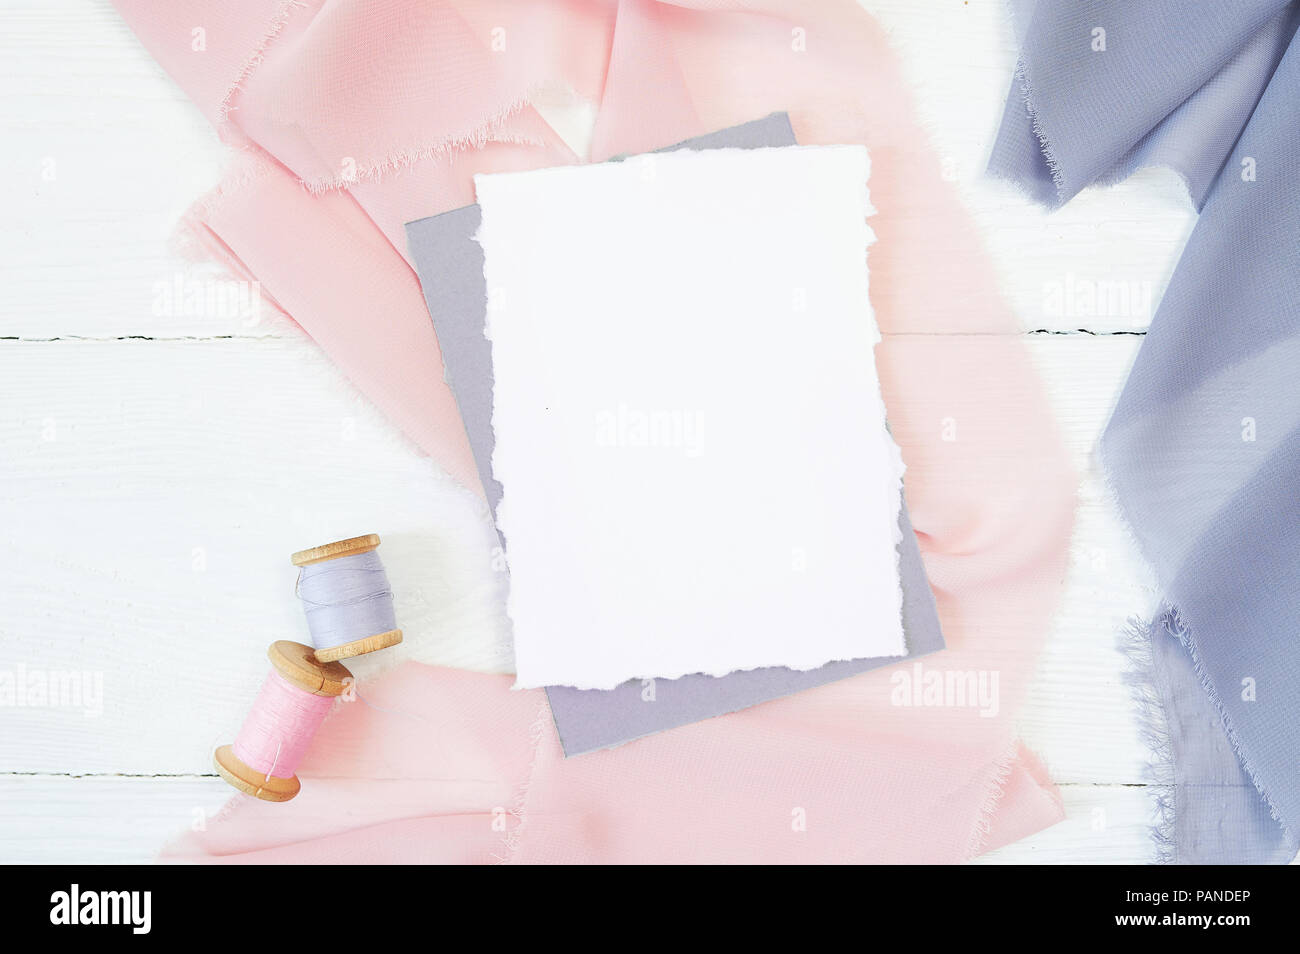 Carte vierge blanc sur un fond de tissu rose et bleu sur fond blanc. Immersive avec enveloppe et carte vierge. Mise à plat. Vue d'en haut Banque D'Images